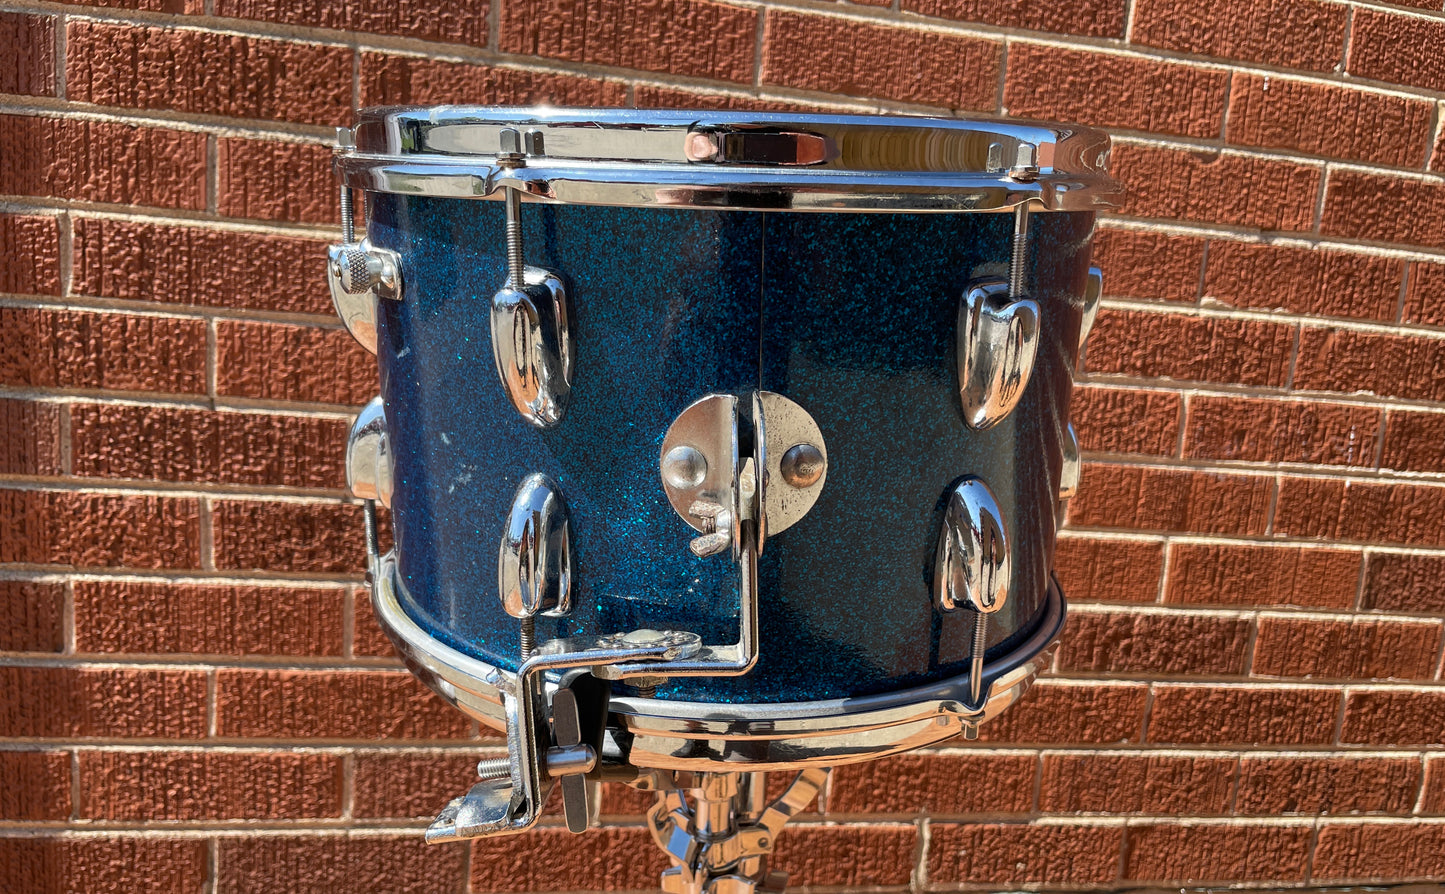 1956-59 Slingerland 2-N Jobbing Outfit Drum Set Blue Sparkle 20/12